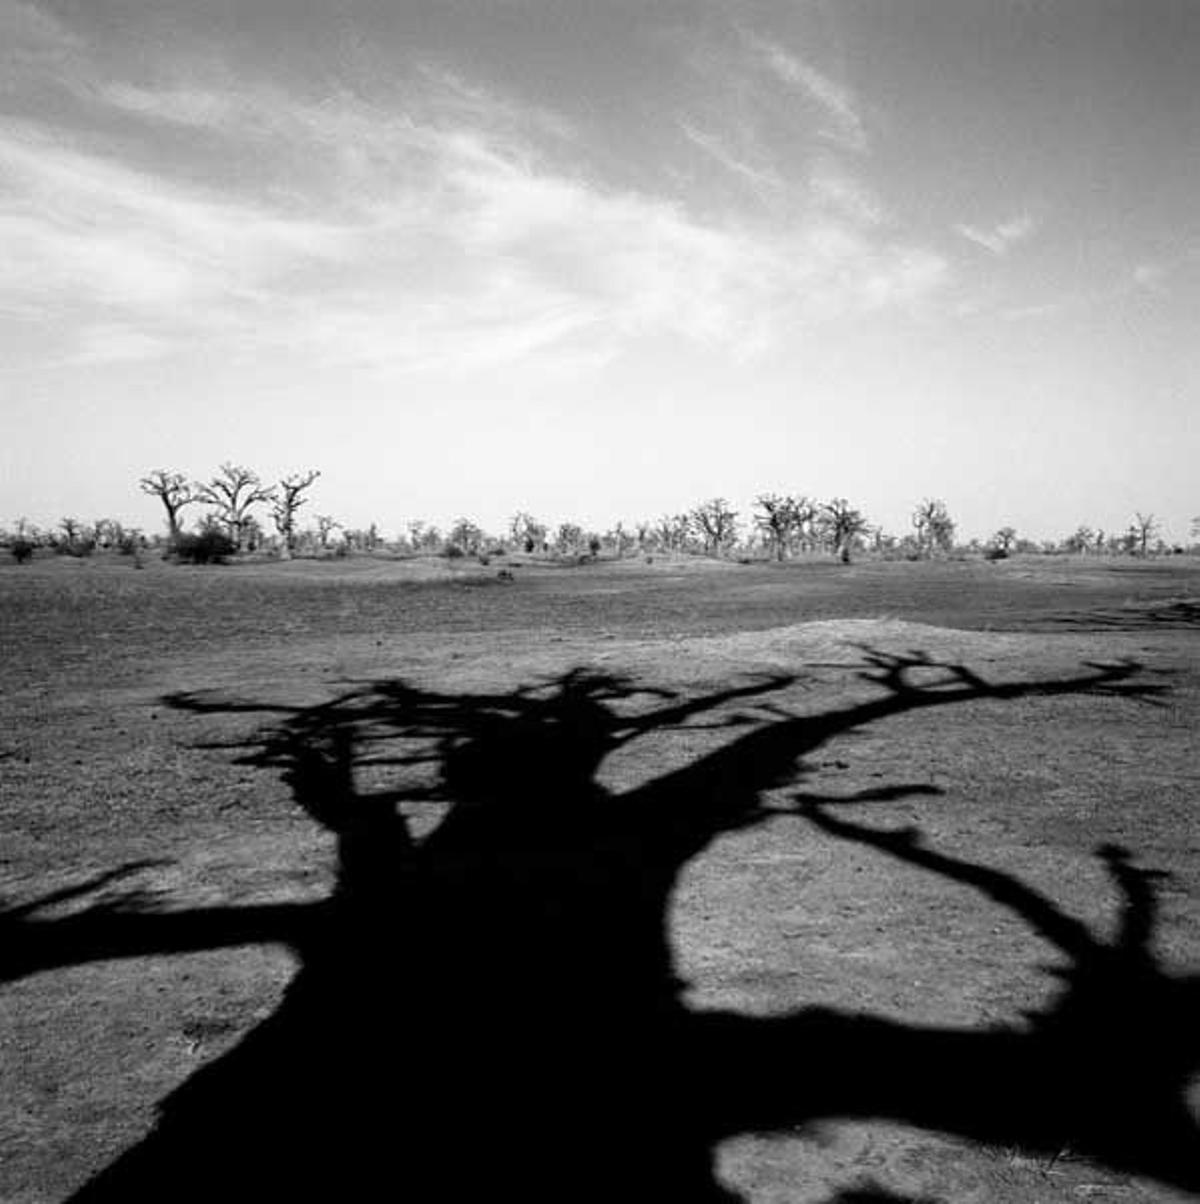 Durante las épocas secas los baobabs pierden sus hojas para sobrevivir a la sequía